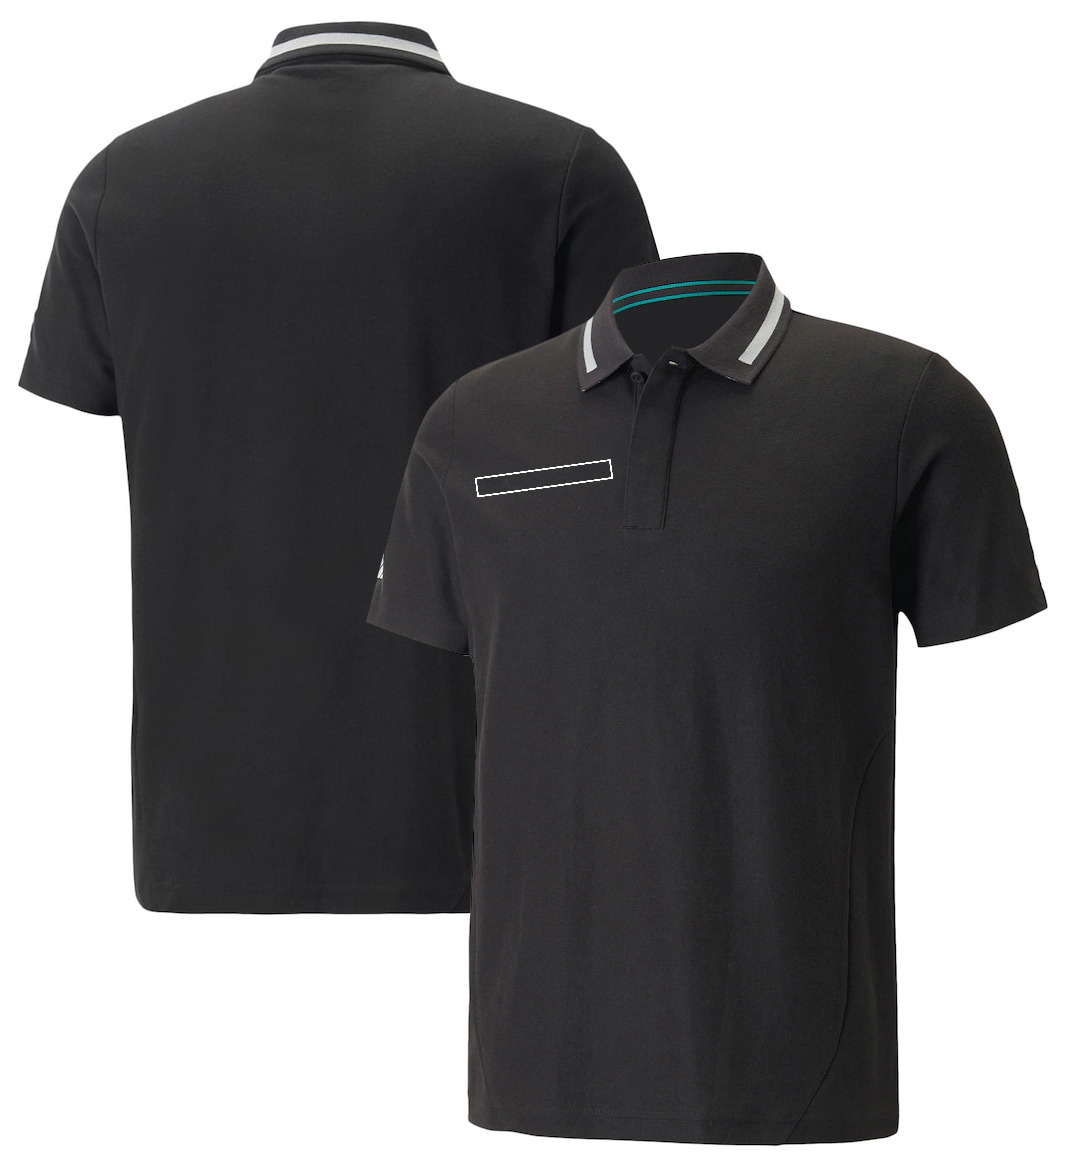 F1 T-Shirt Formel 1 Team Racing Fans Spezial Edition T-Shirt Herren Polo Shirt Jersey Sommer Männer Frauen Print Fashion T-Shirt Tops